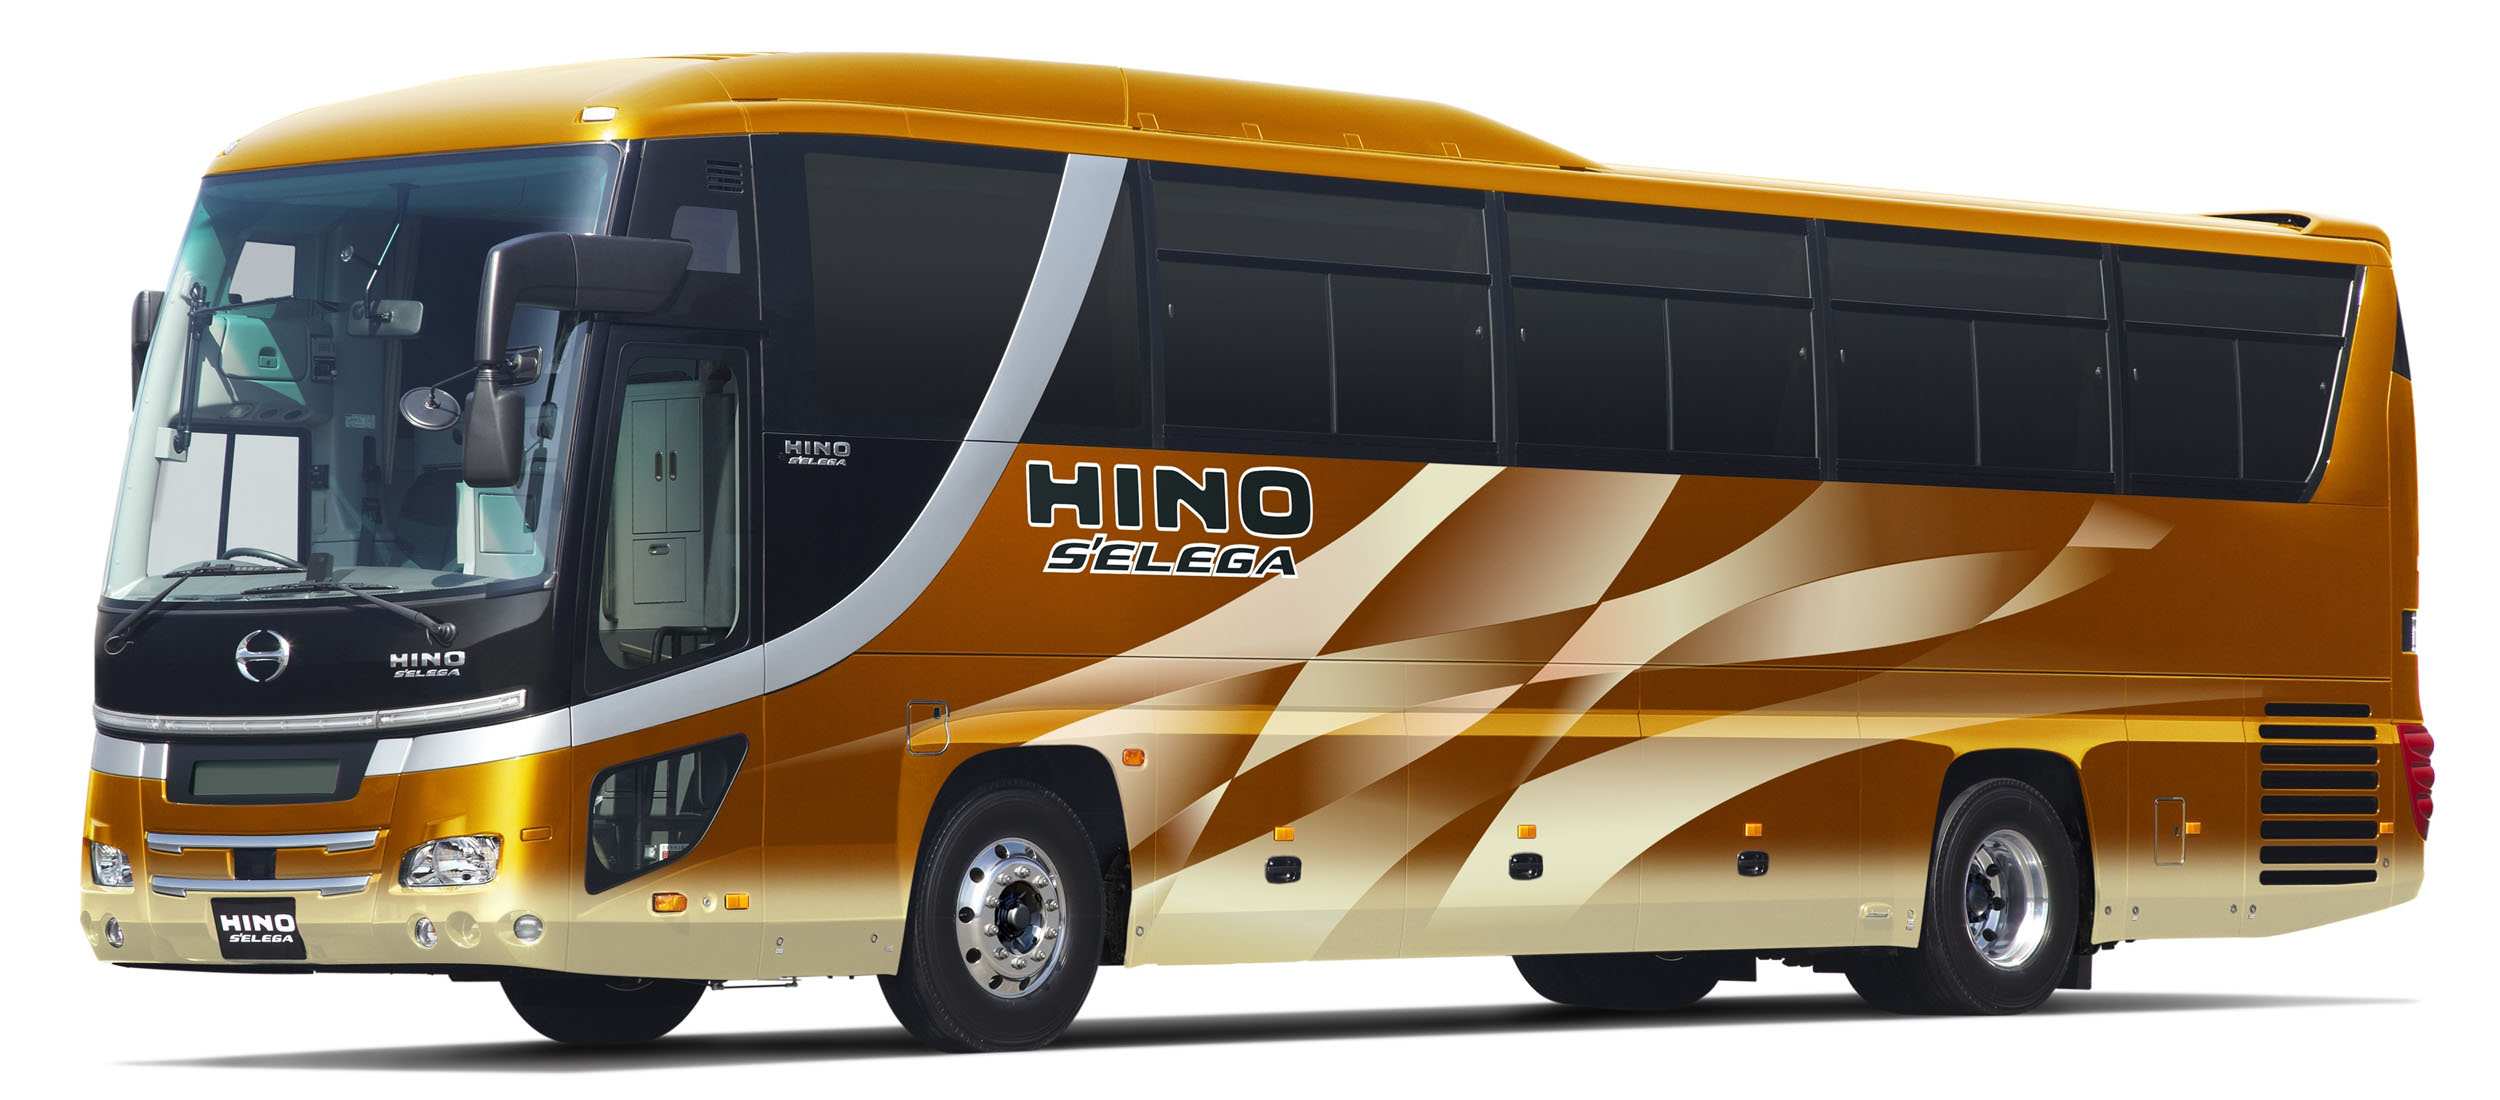 日野自動車ニュース】大型観光バス「日野セレガ」を改良して新発売 